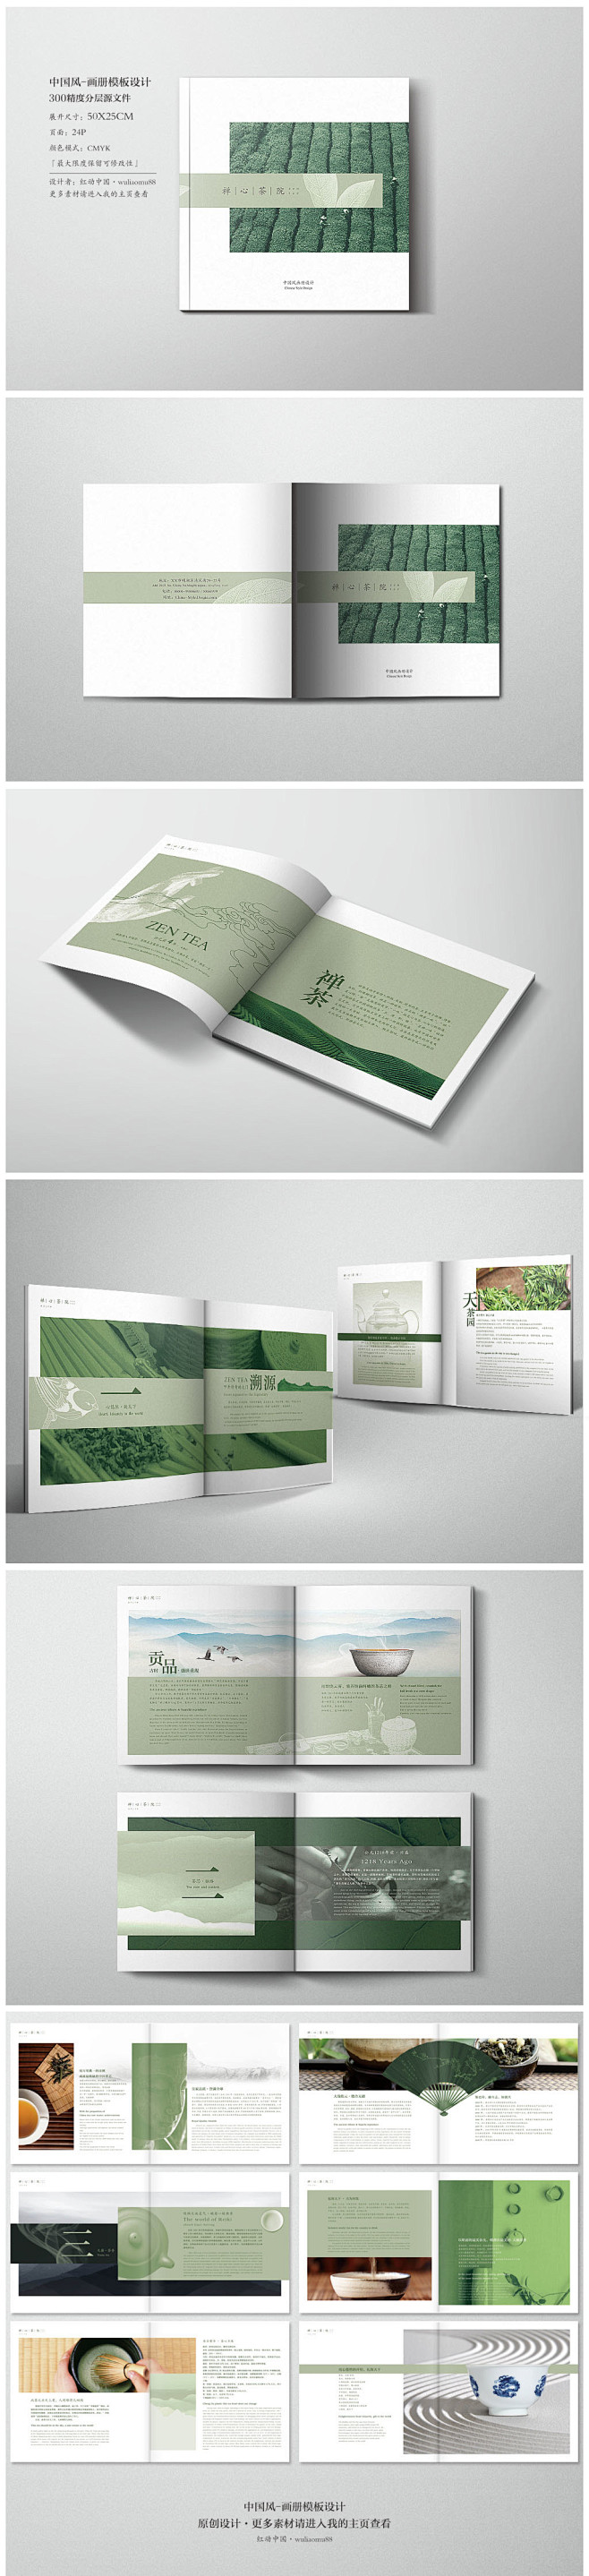 茶叶 中国风 画册设计 版式设计 宣传册...